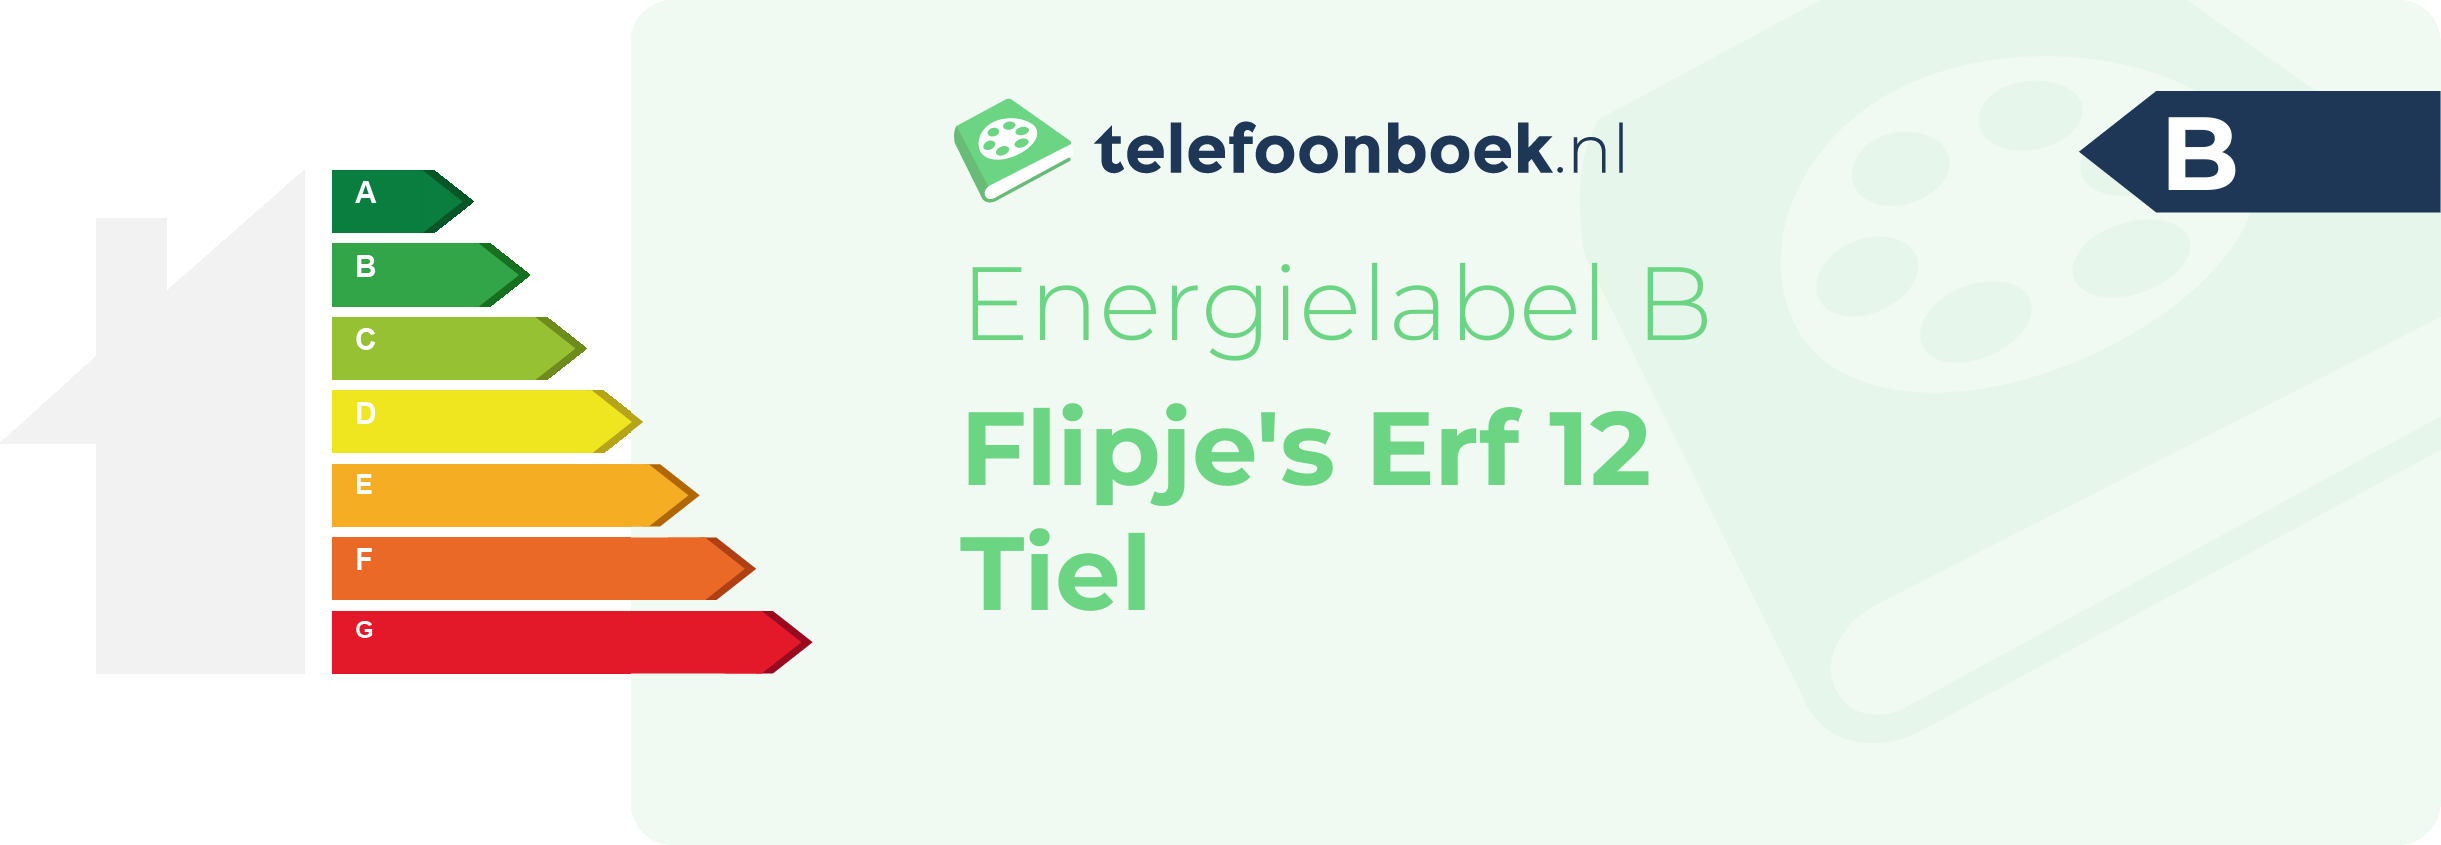 Energielabel Flipje's Erf 12 Tiel